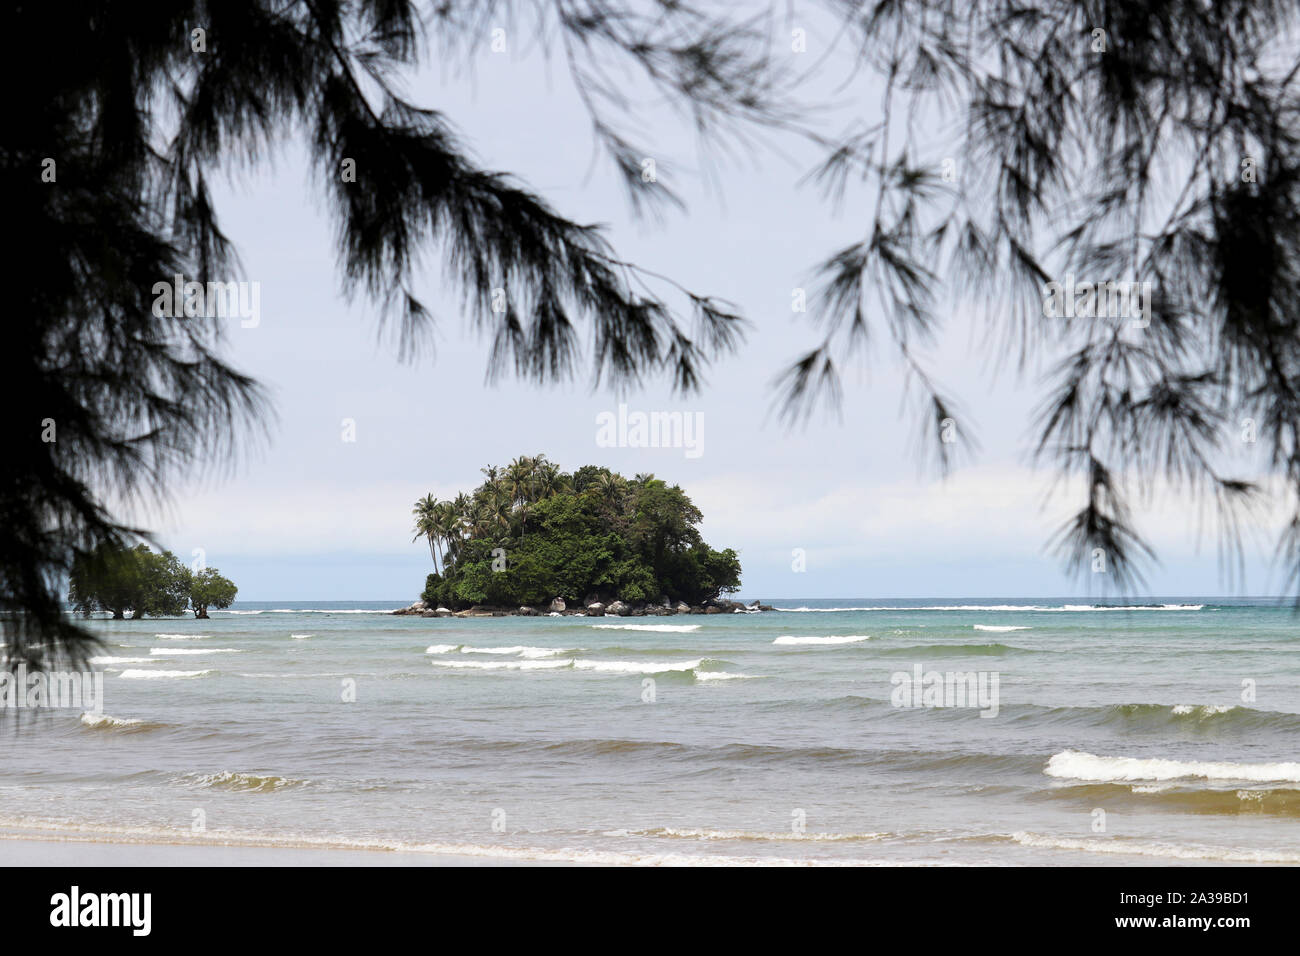 Tropical beach, vue sur le bleu de la mer et l'île verte de palmiers à travers les branches de casuarina, selective focus. Paradise nature background Banque D'Images